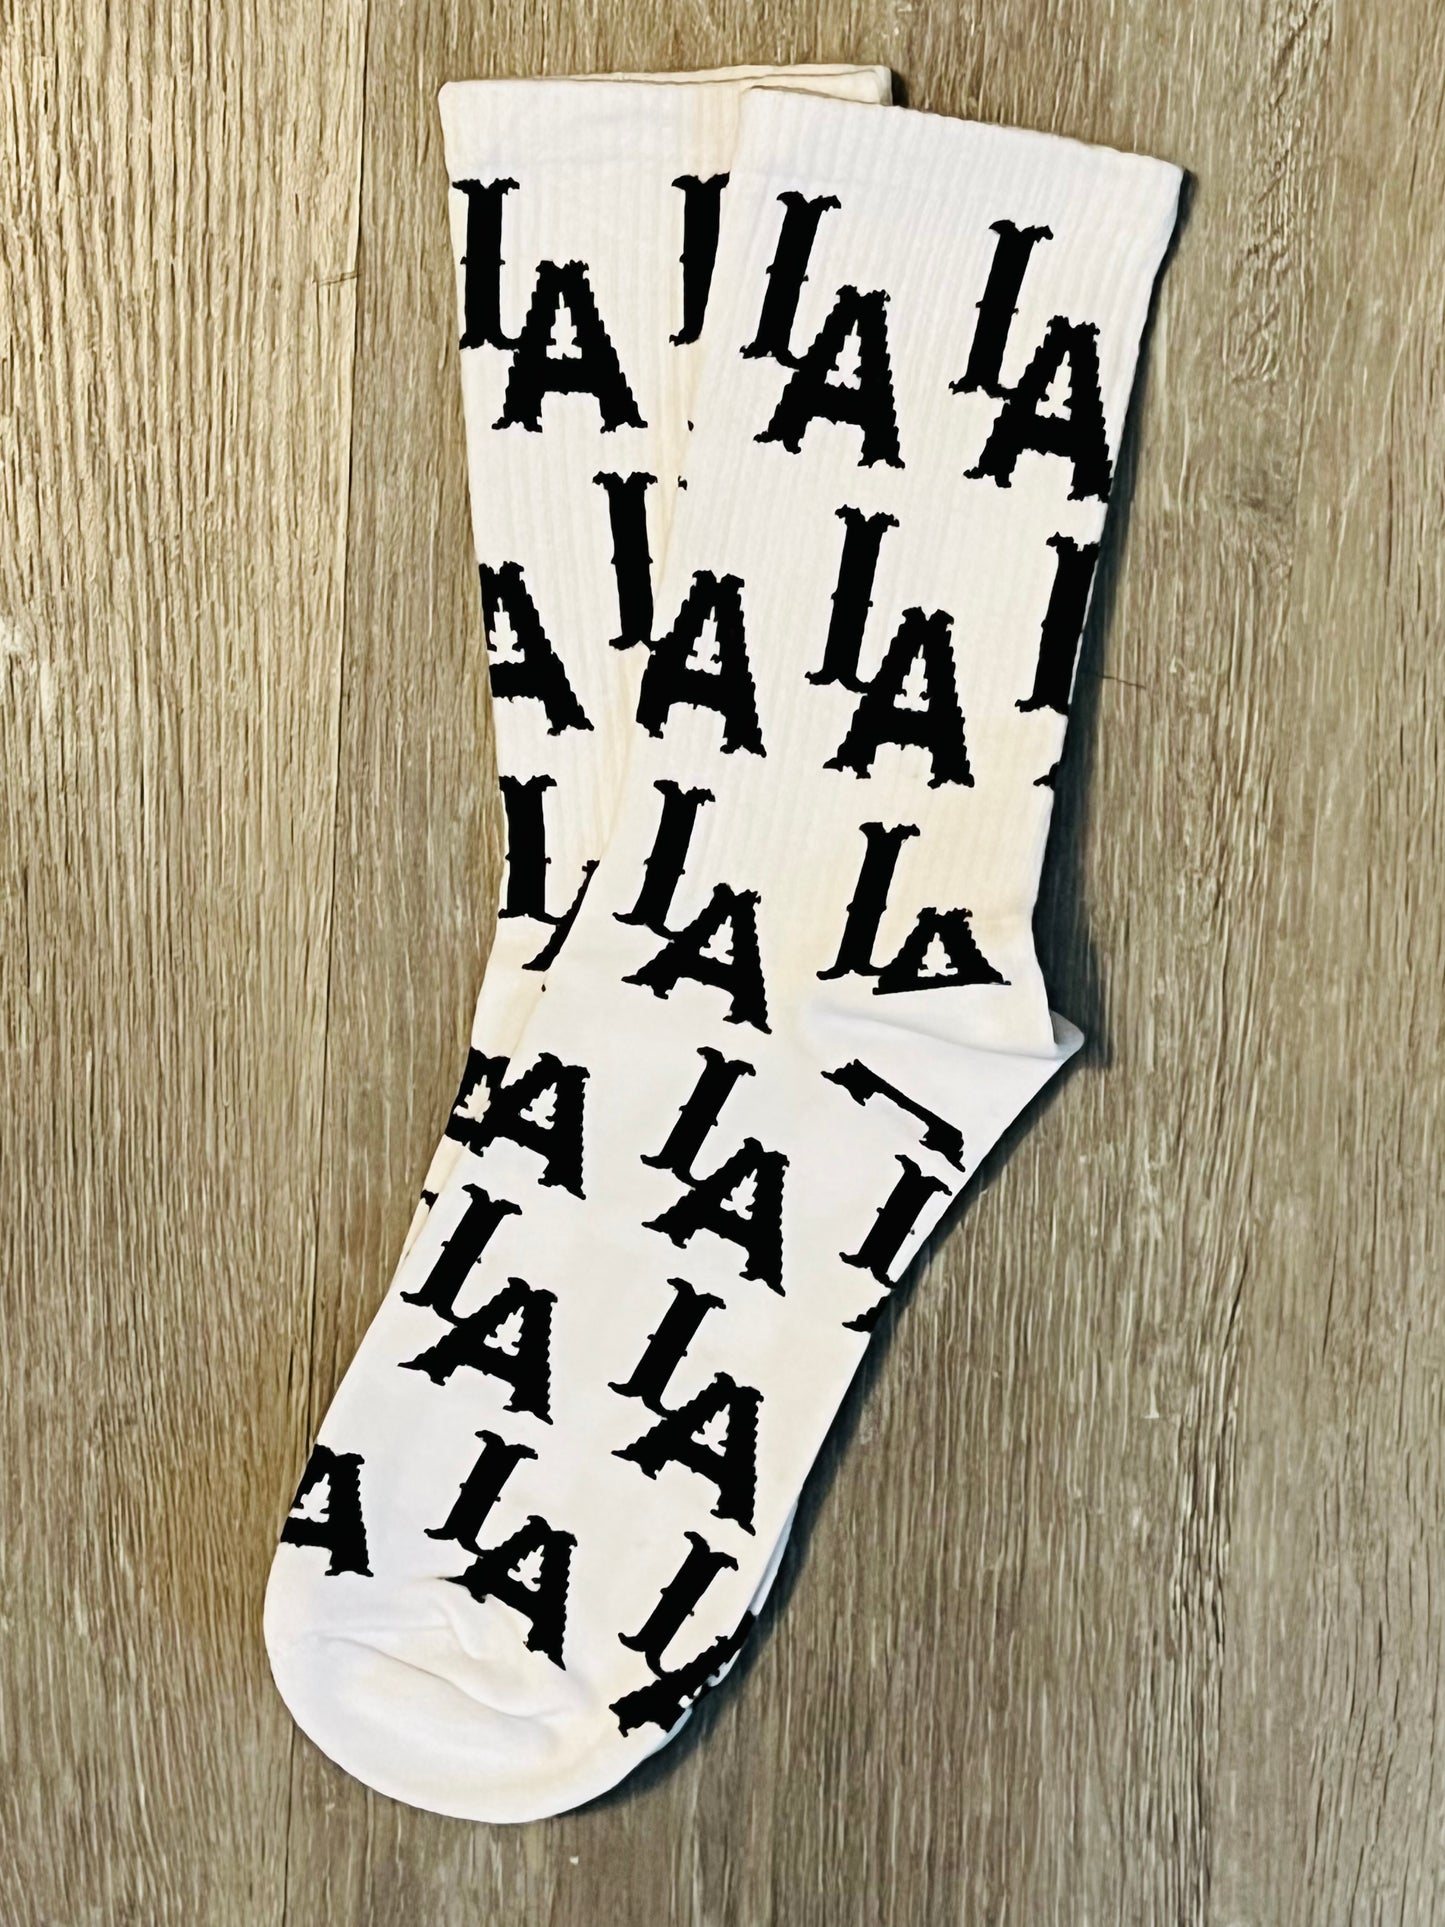 IA Letter Socks